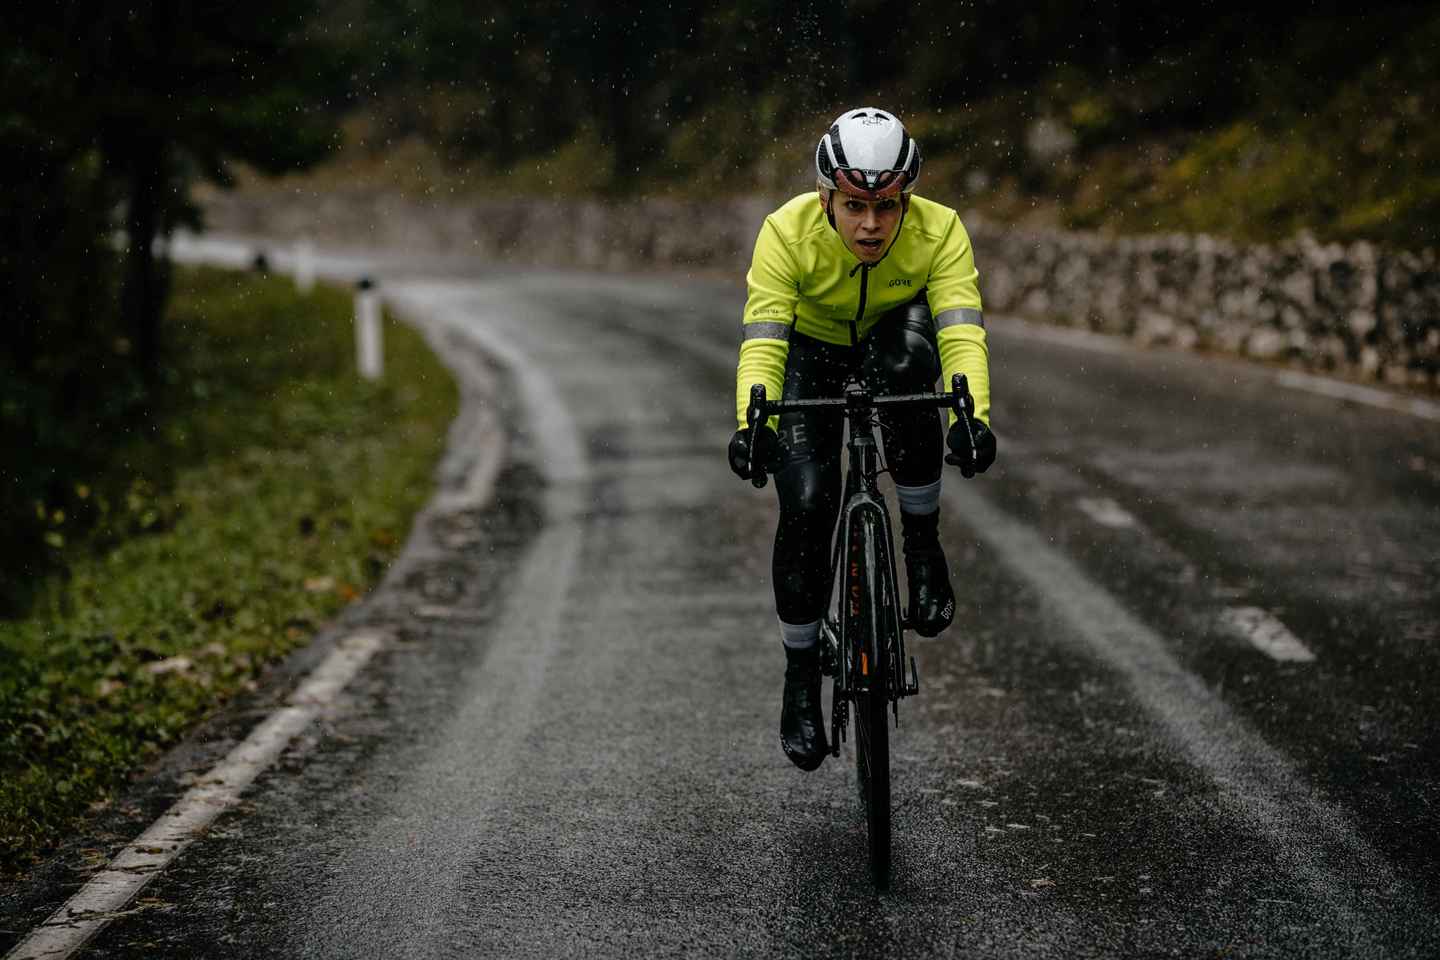 Radfahren Regenmantel Fahrrad Regen Abdeckung Atmungsaktive